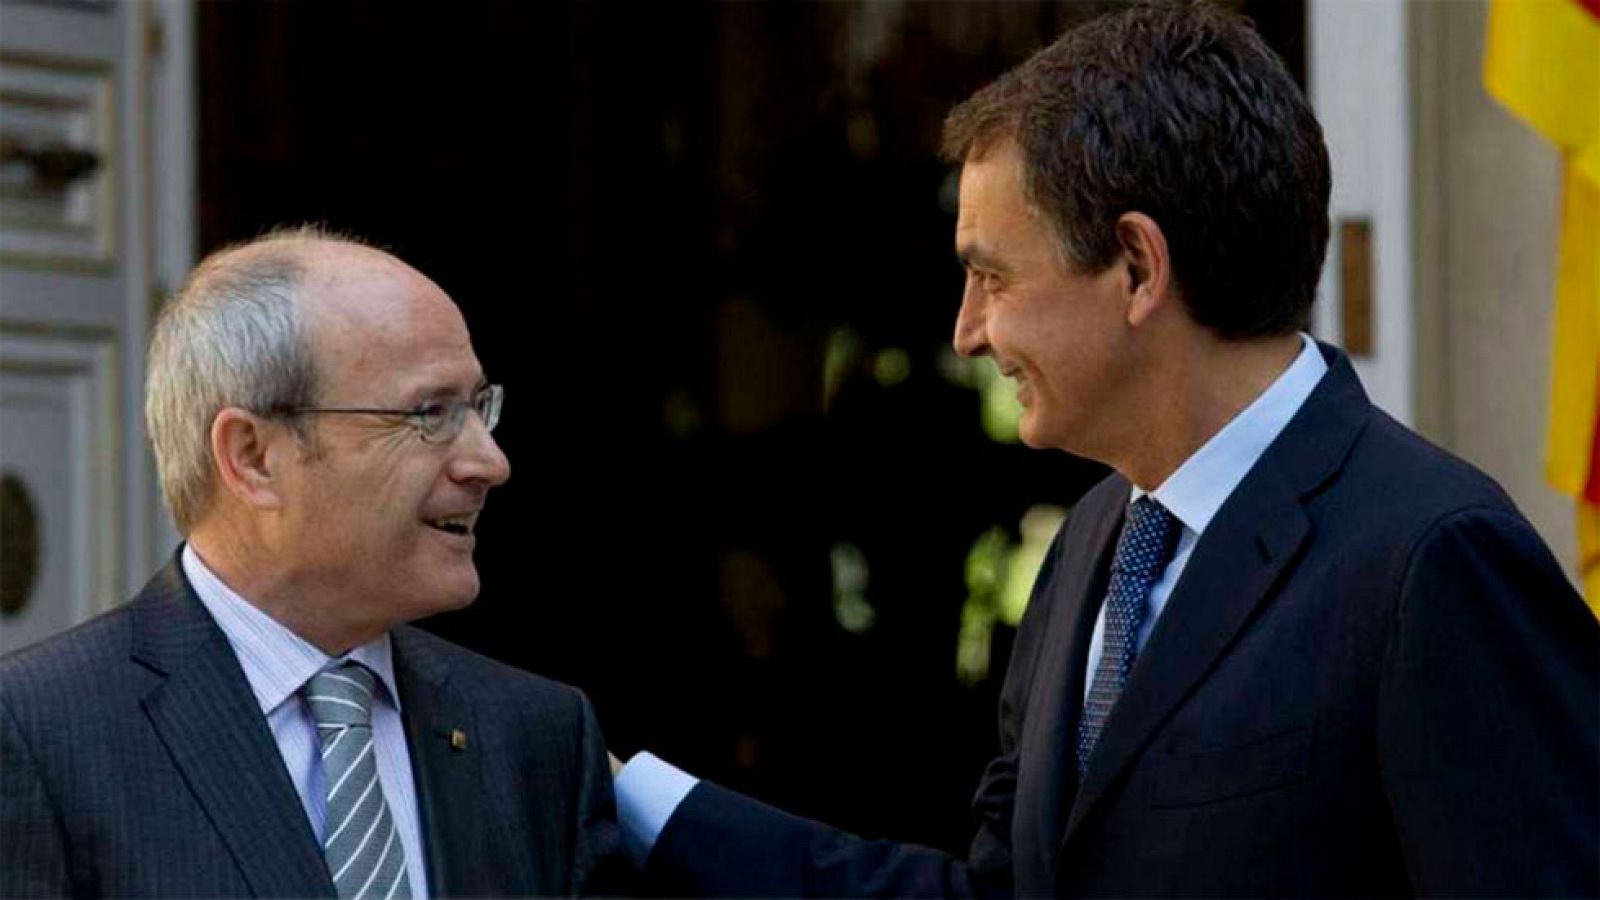 El Debat de La 1 - Atents als pactes per formar govern i entrevista a José Montilla - Avanç